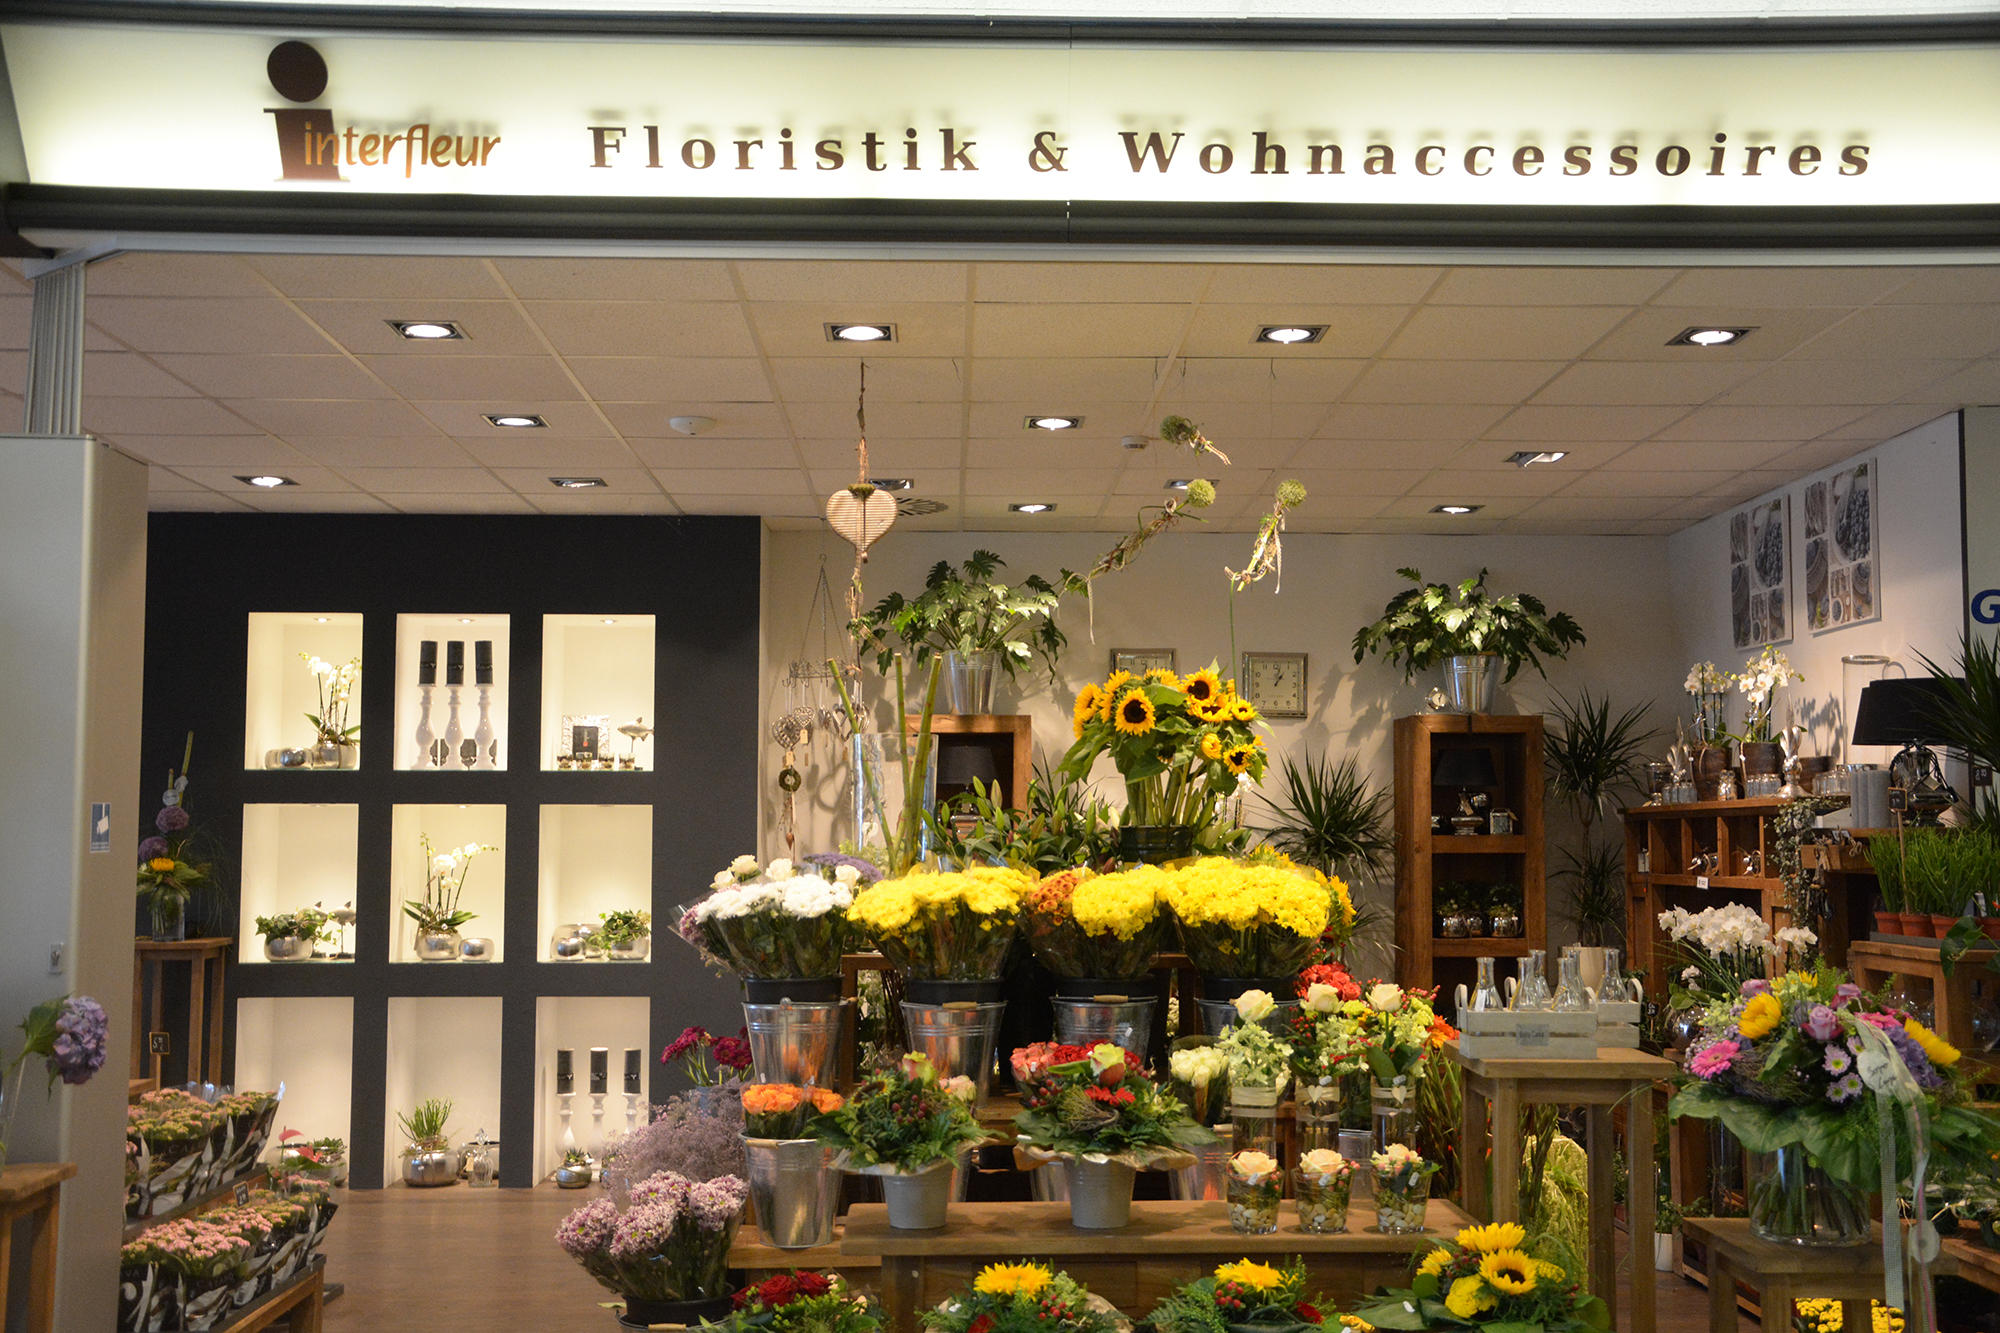 Bild 2 Blumen Interfleur Floristik & Wohnaccessoires in Edewecht